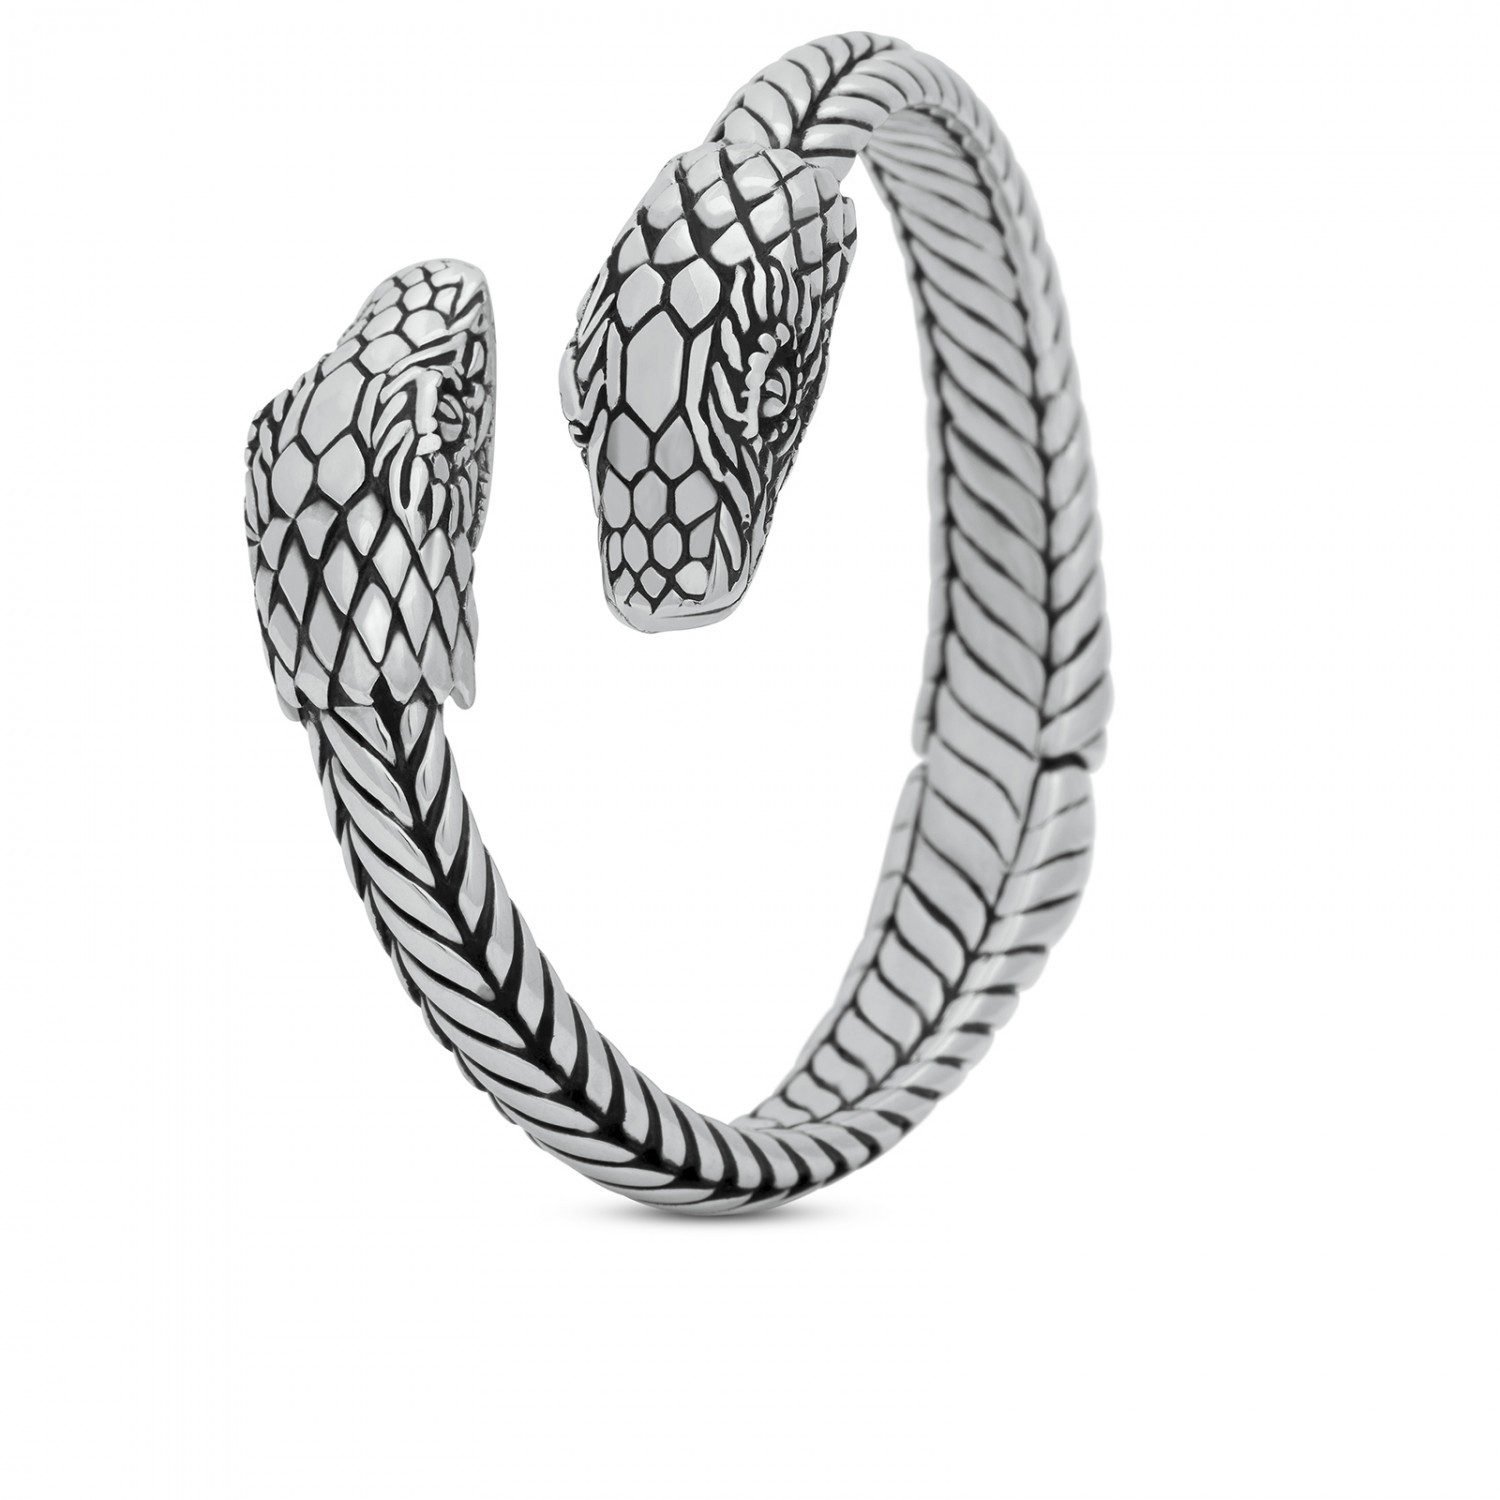 Detecteerbaar Peave Mark Slang armband S20 Online Kopen?! | FIERCE by SILK Jewellery